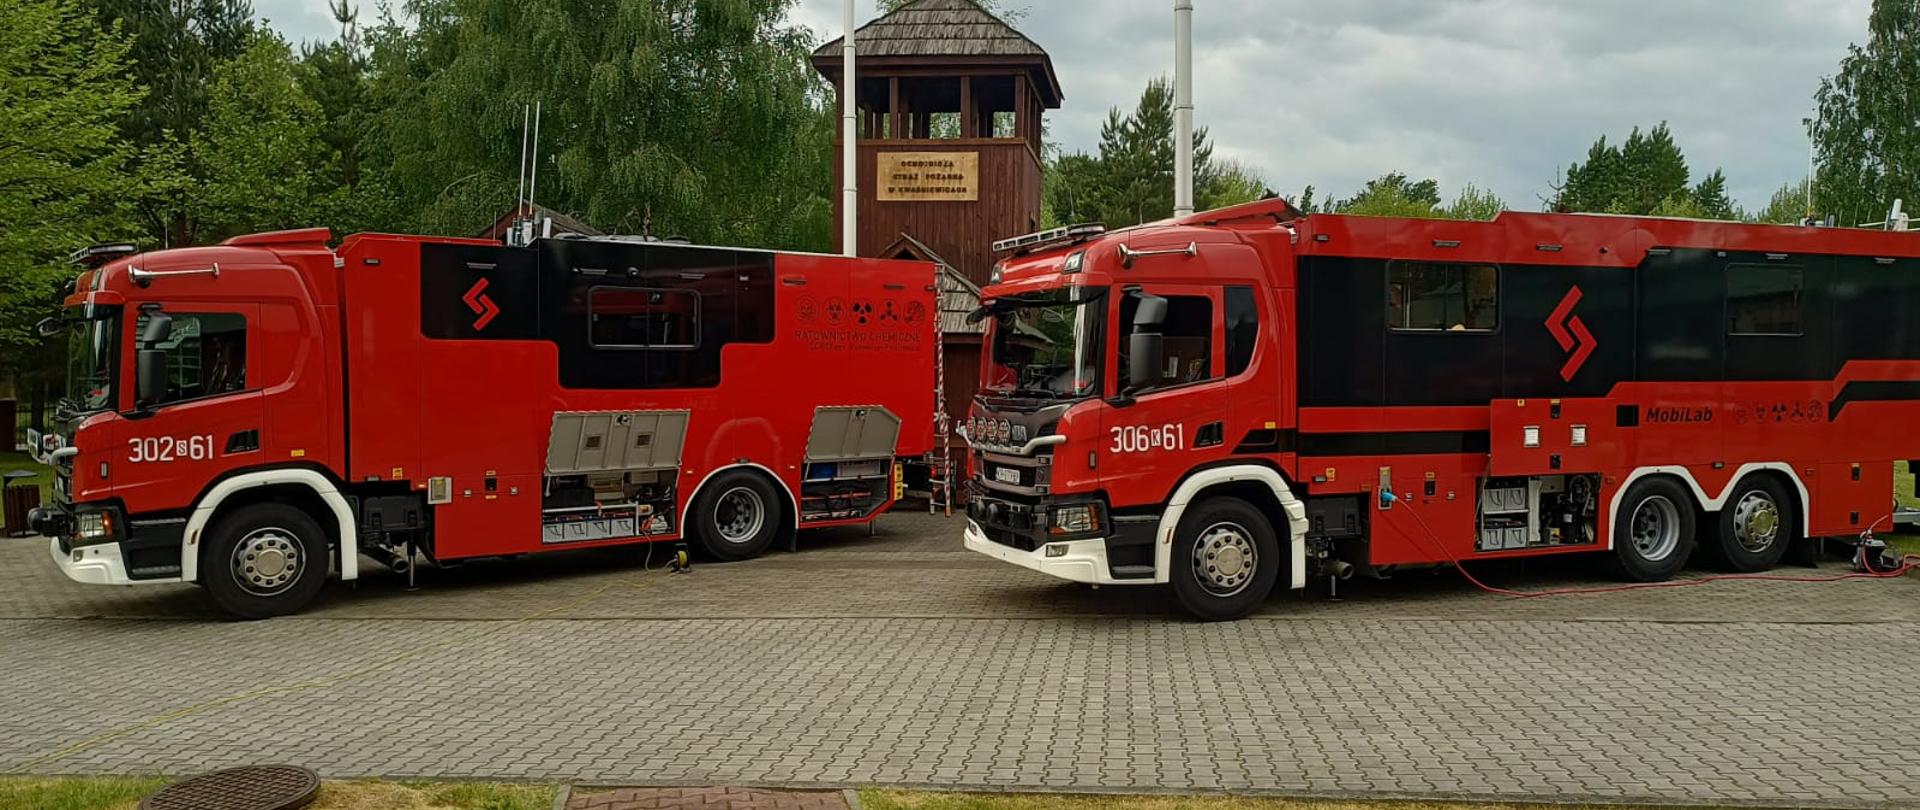 Na zdjęciu widać dwa samochody specjalne strażackie MobilLab